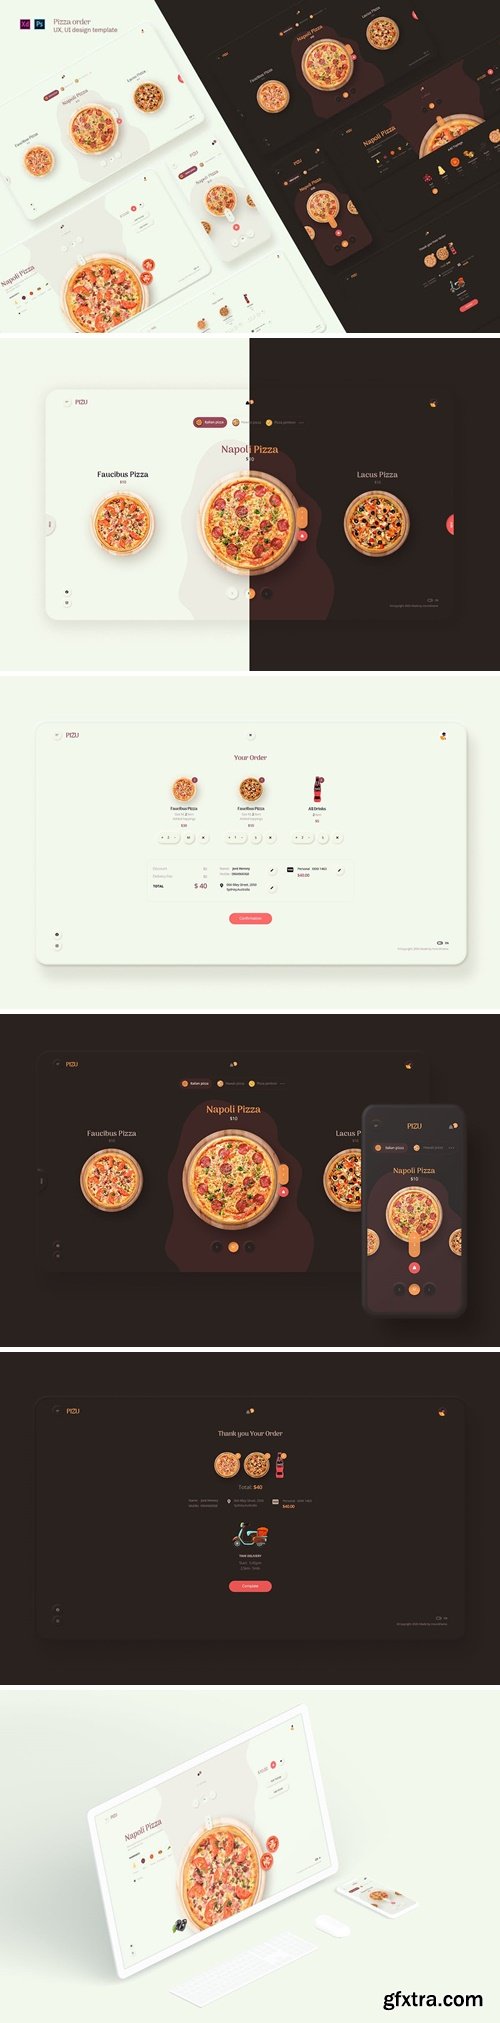 Pizu - Pizza order UX, UI design template 9DWCMTC